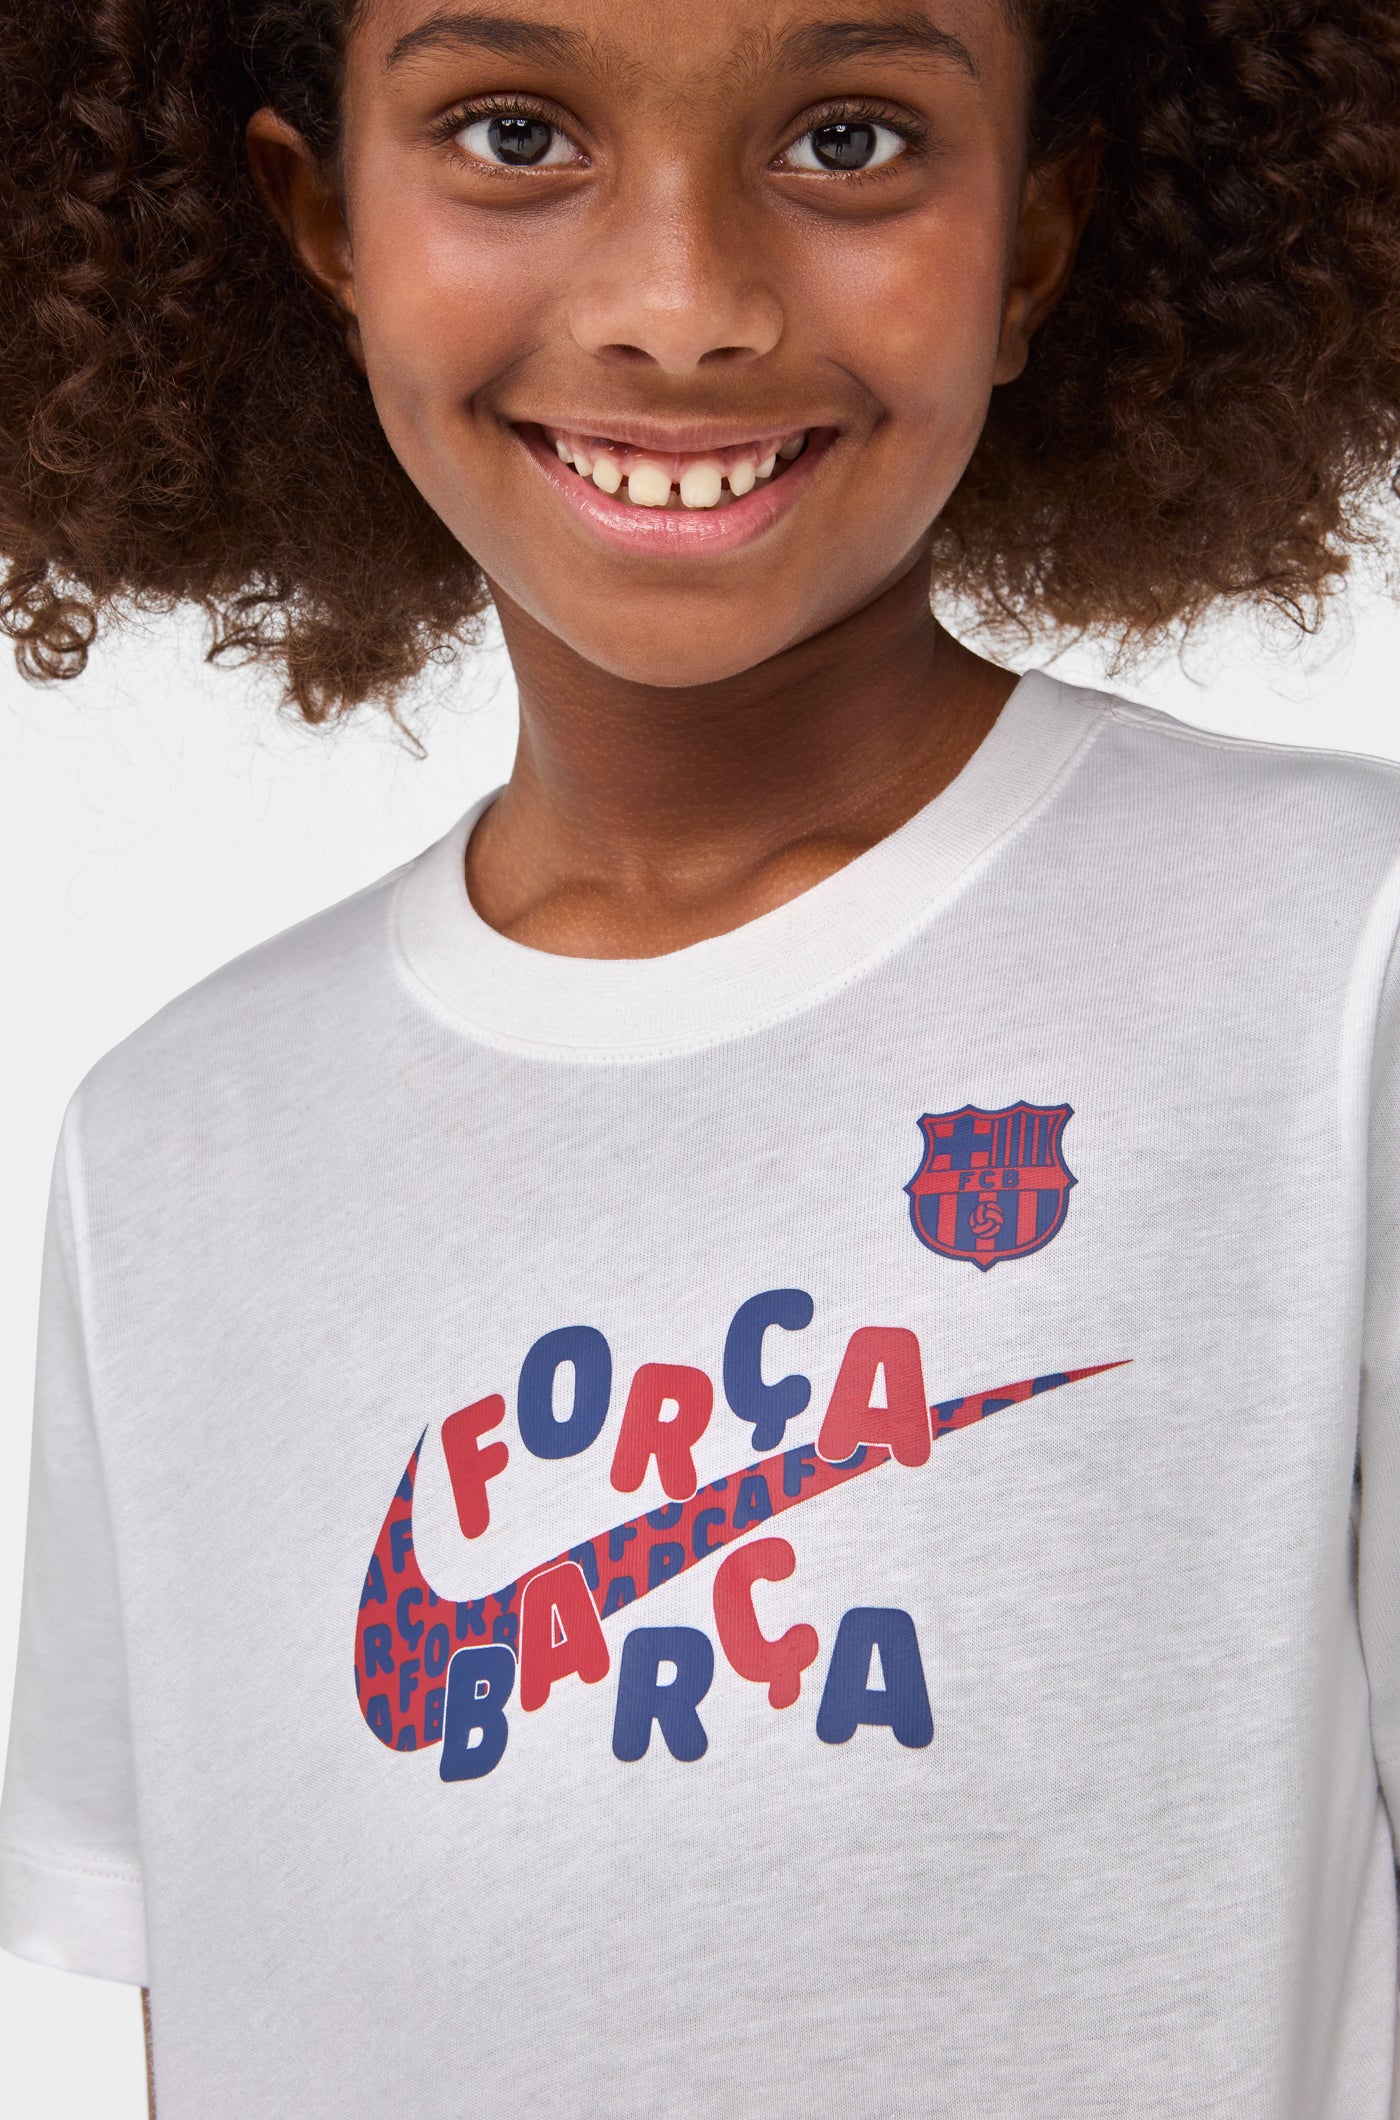 Samarreta Força Barça Barça Nike - Junior